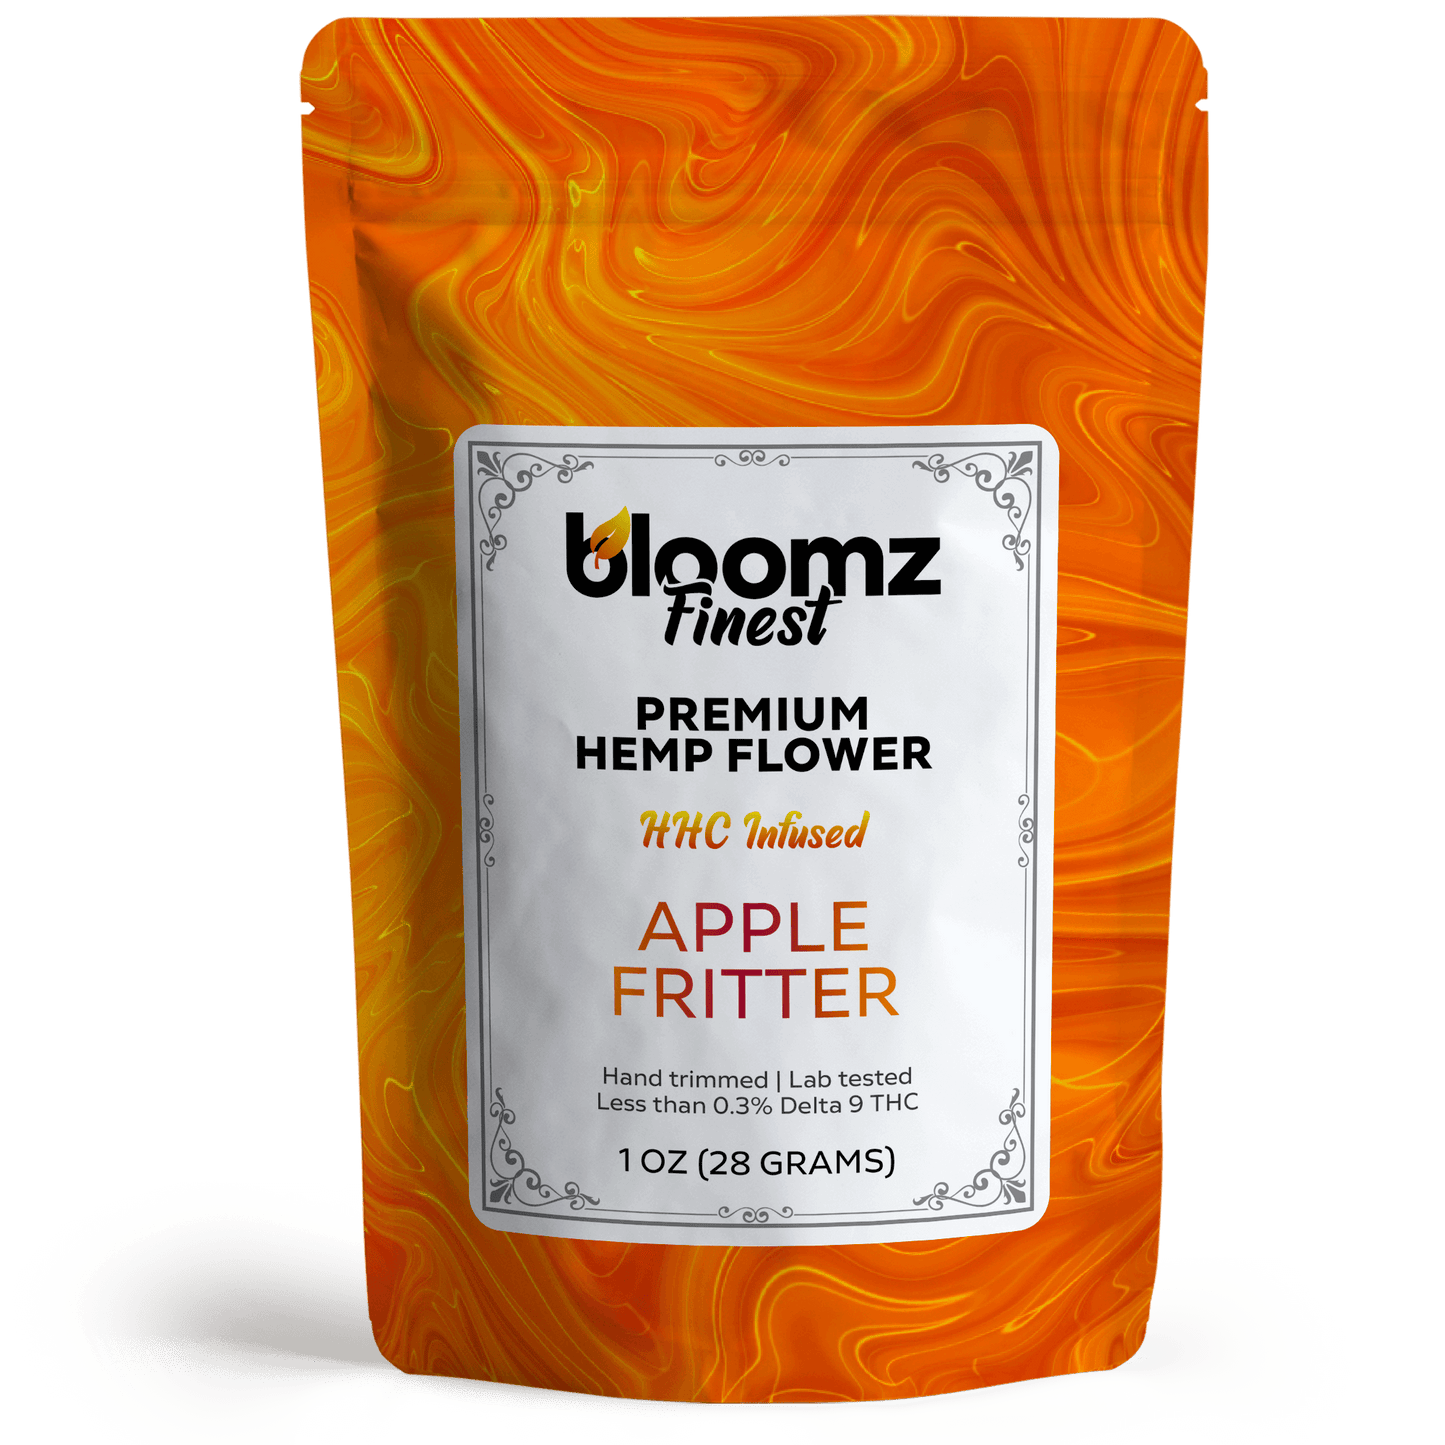 Bloomz | Premium HHC Flower 3.5g - 28g Best Sales Price - CBD